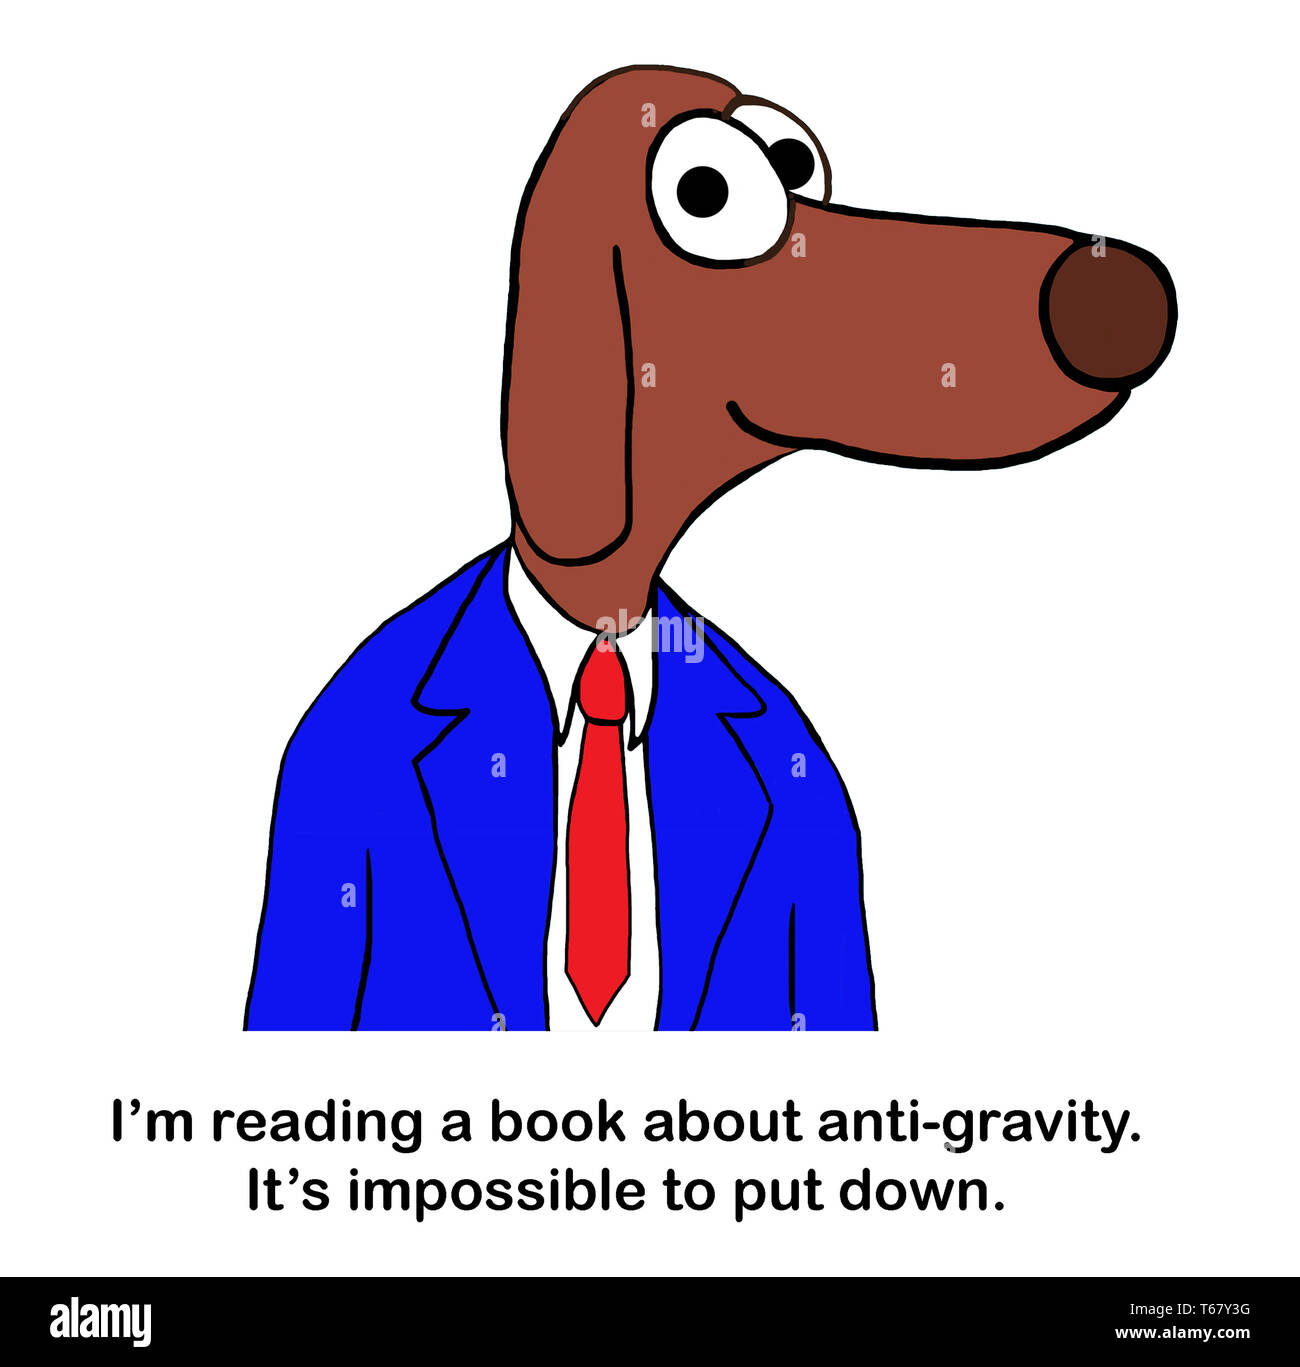 Profesor de perro puede poner abajo gravedad libro Foto de stock